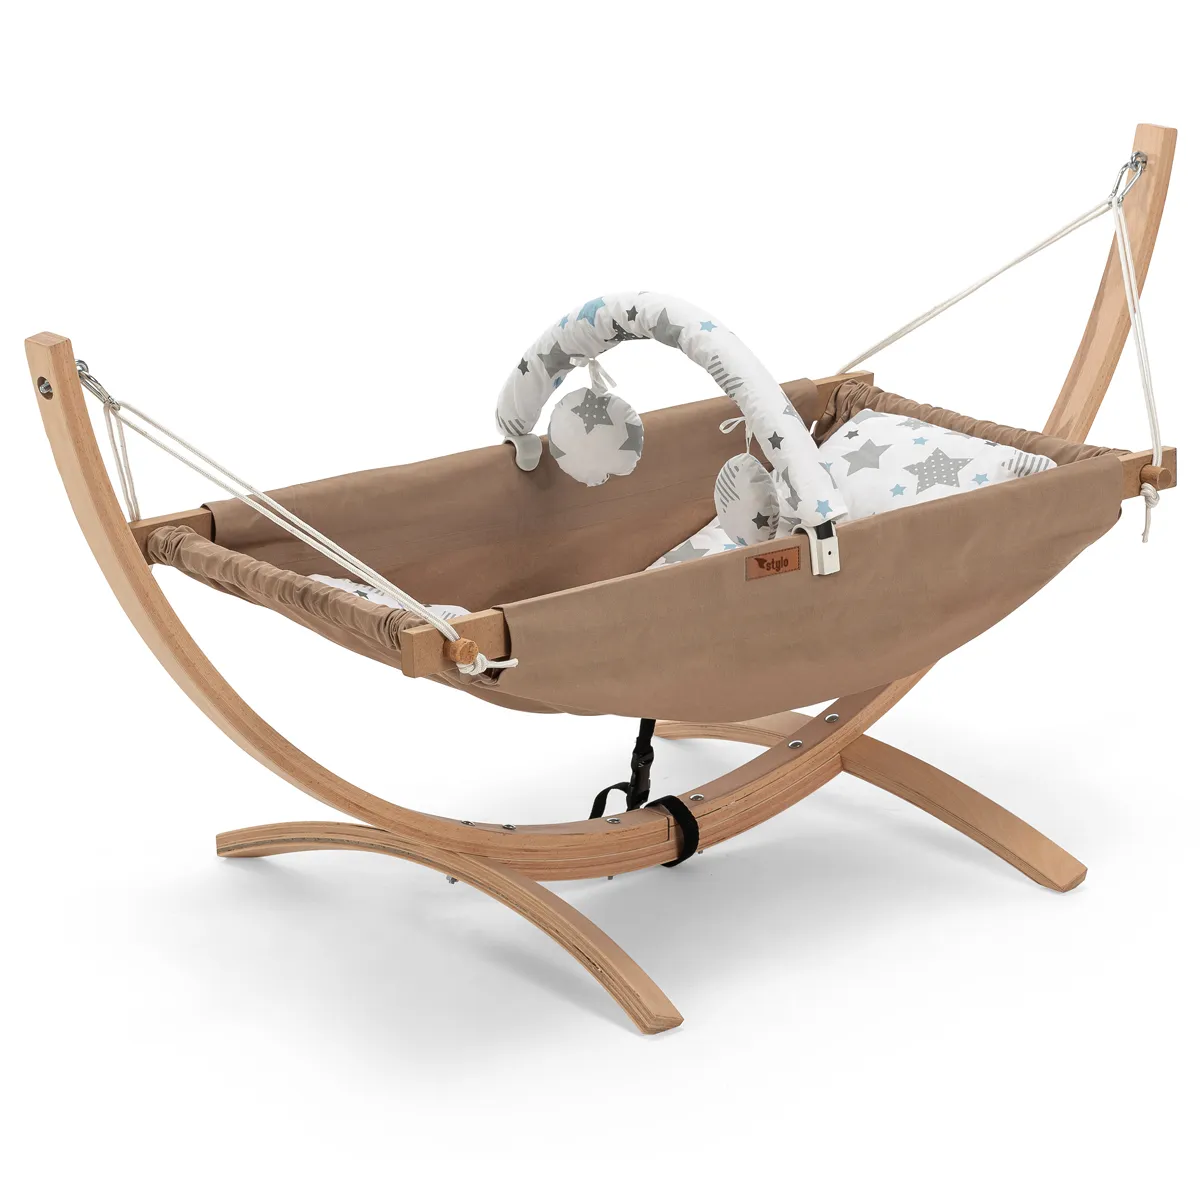 Hamaca portátil de madera Natural para bebé, silla columpio para uso en exteriores o interiores para el cuidado del bebé